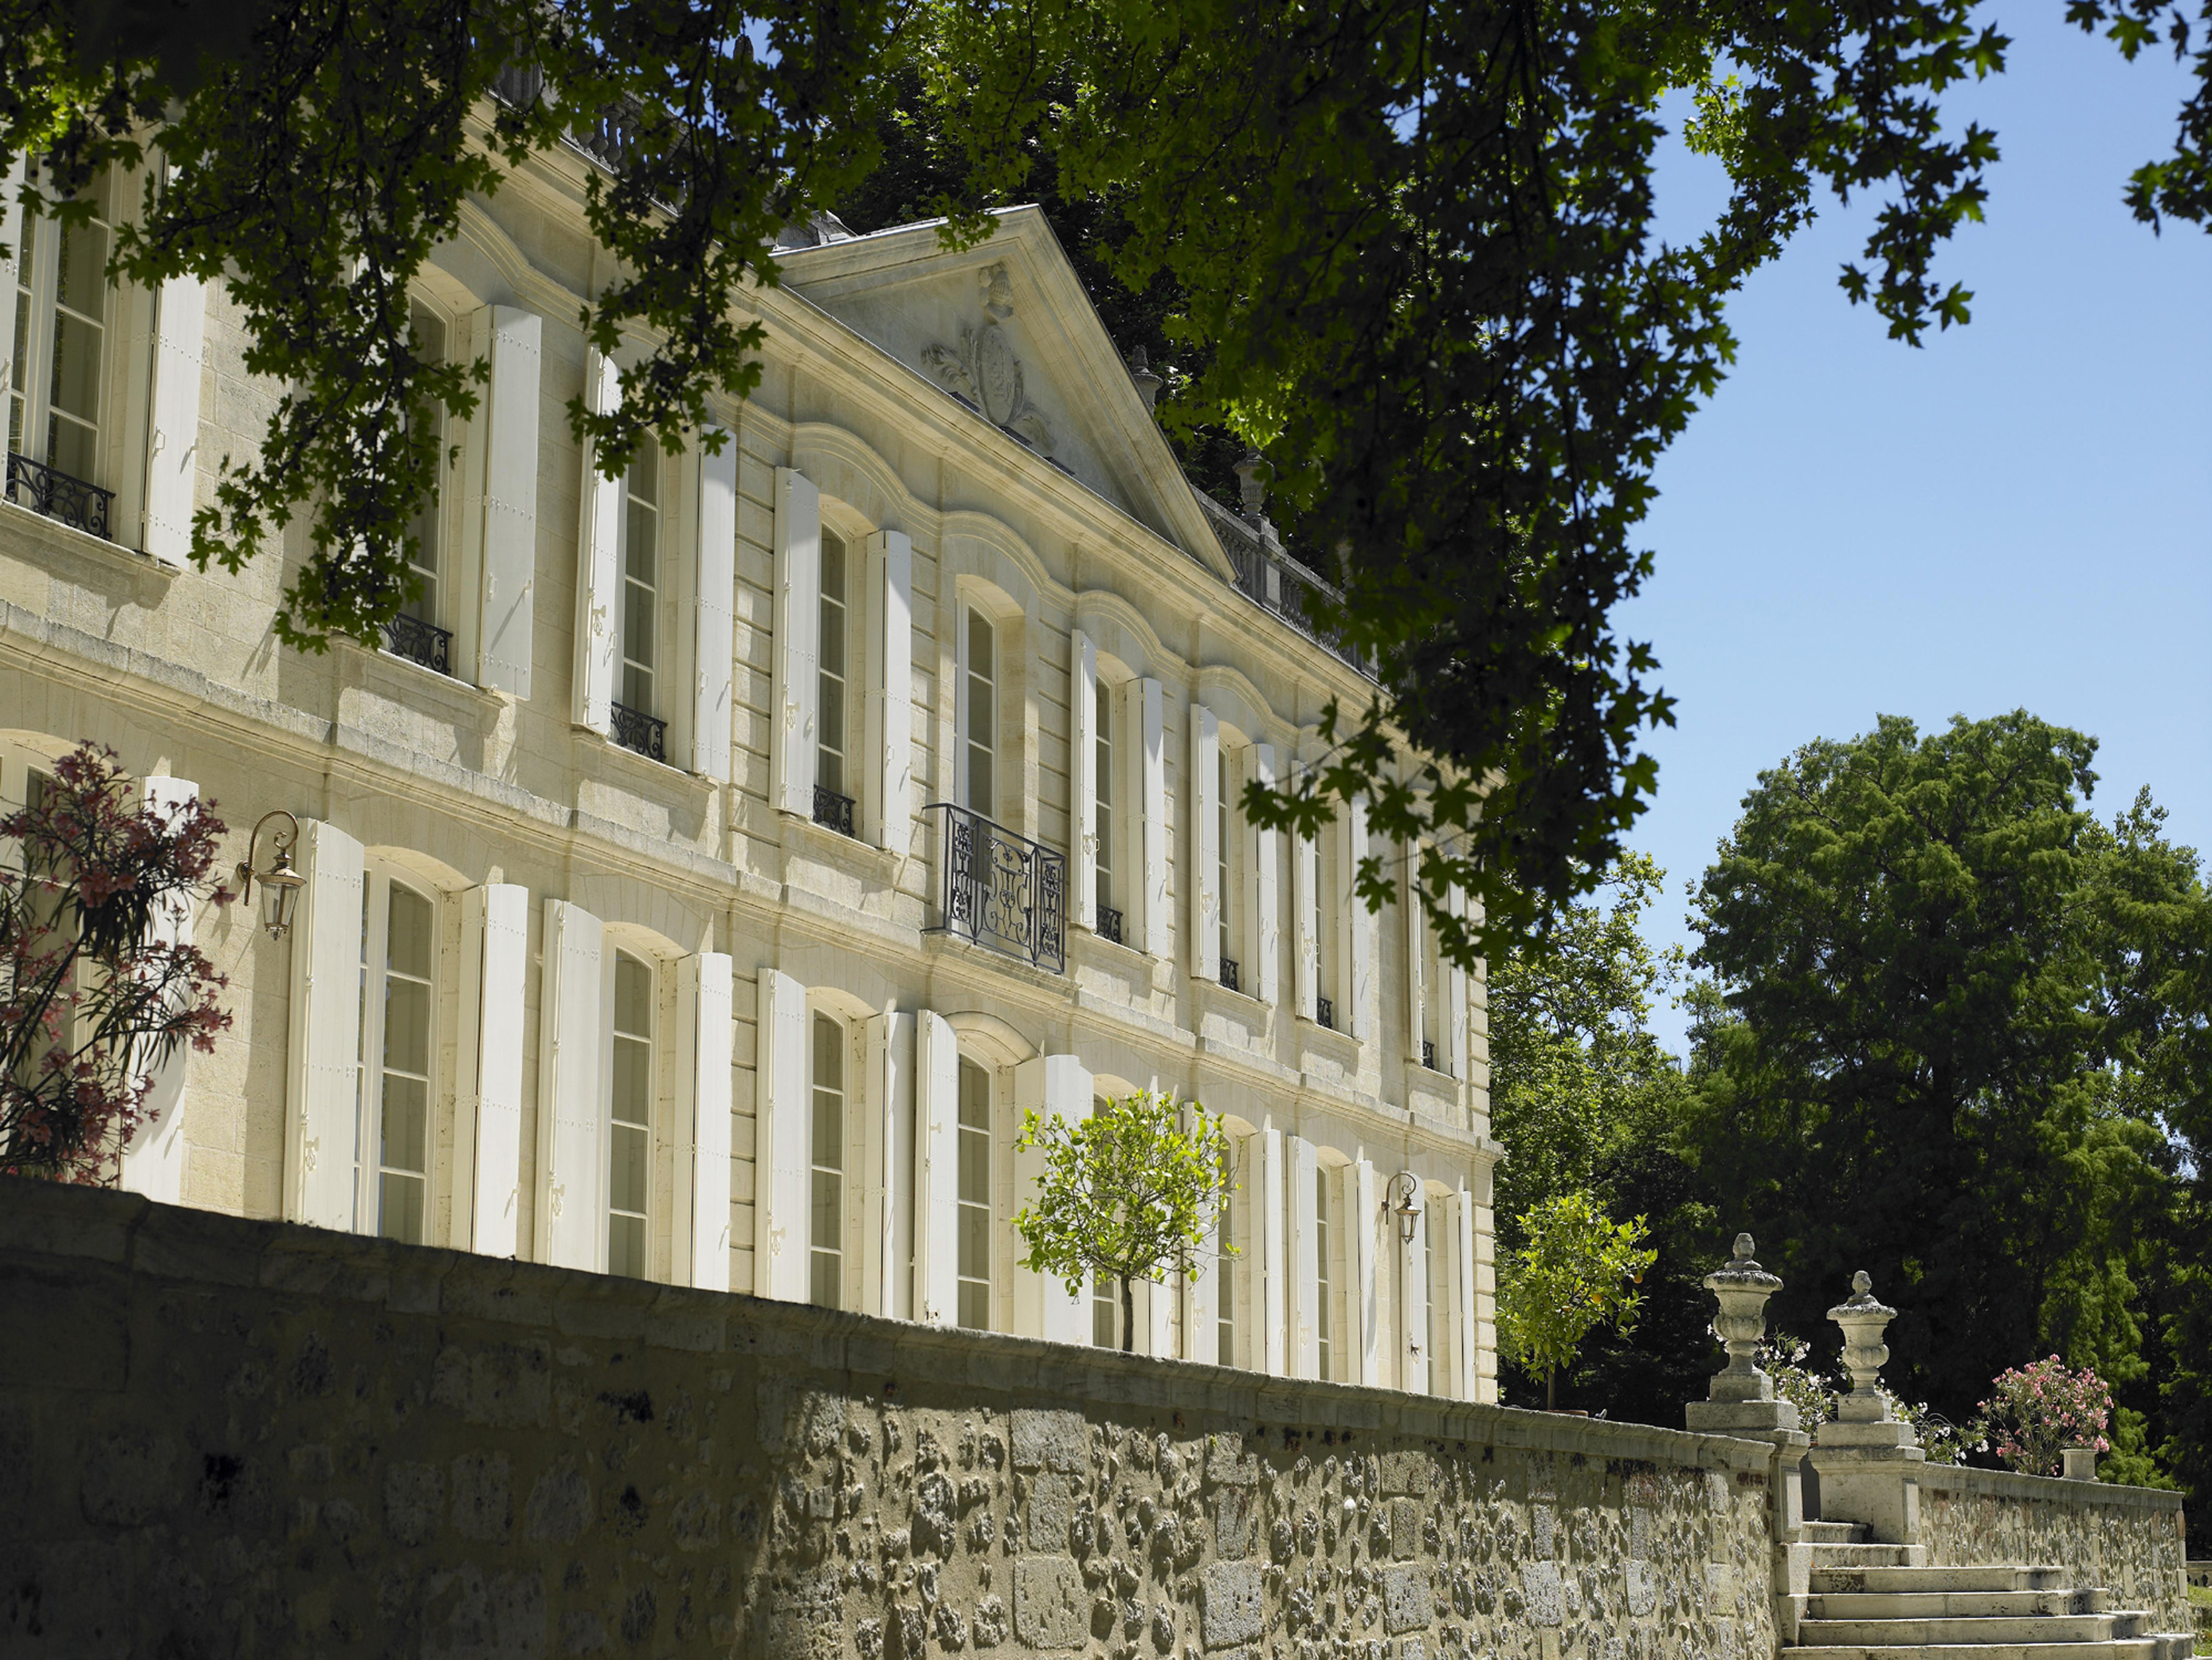 The beautiful facade of Château de la Dauphine @ladauphine